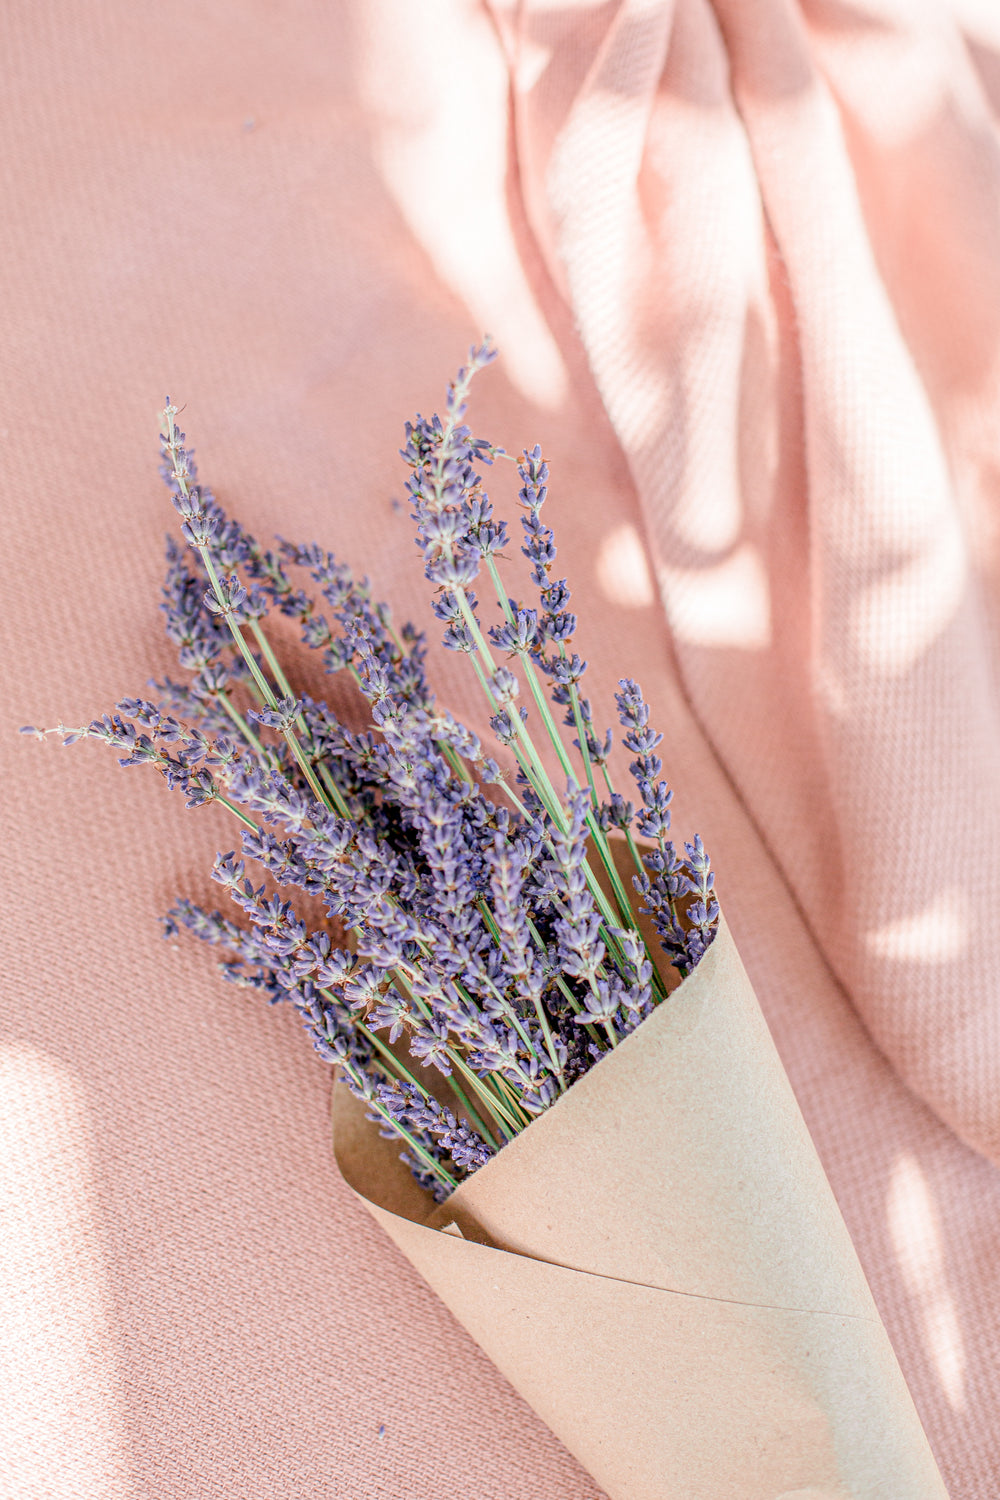 pink blanket with lavender bundle